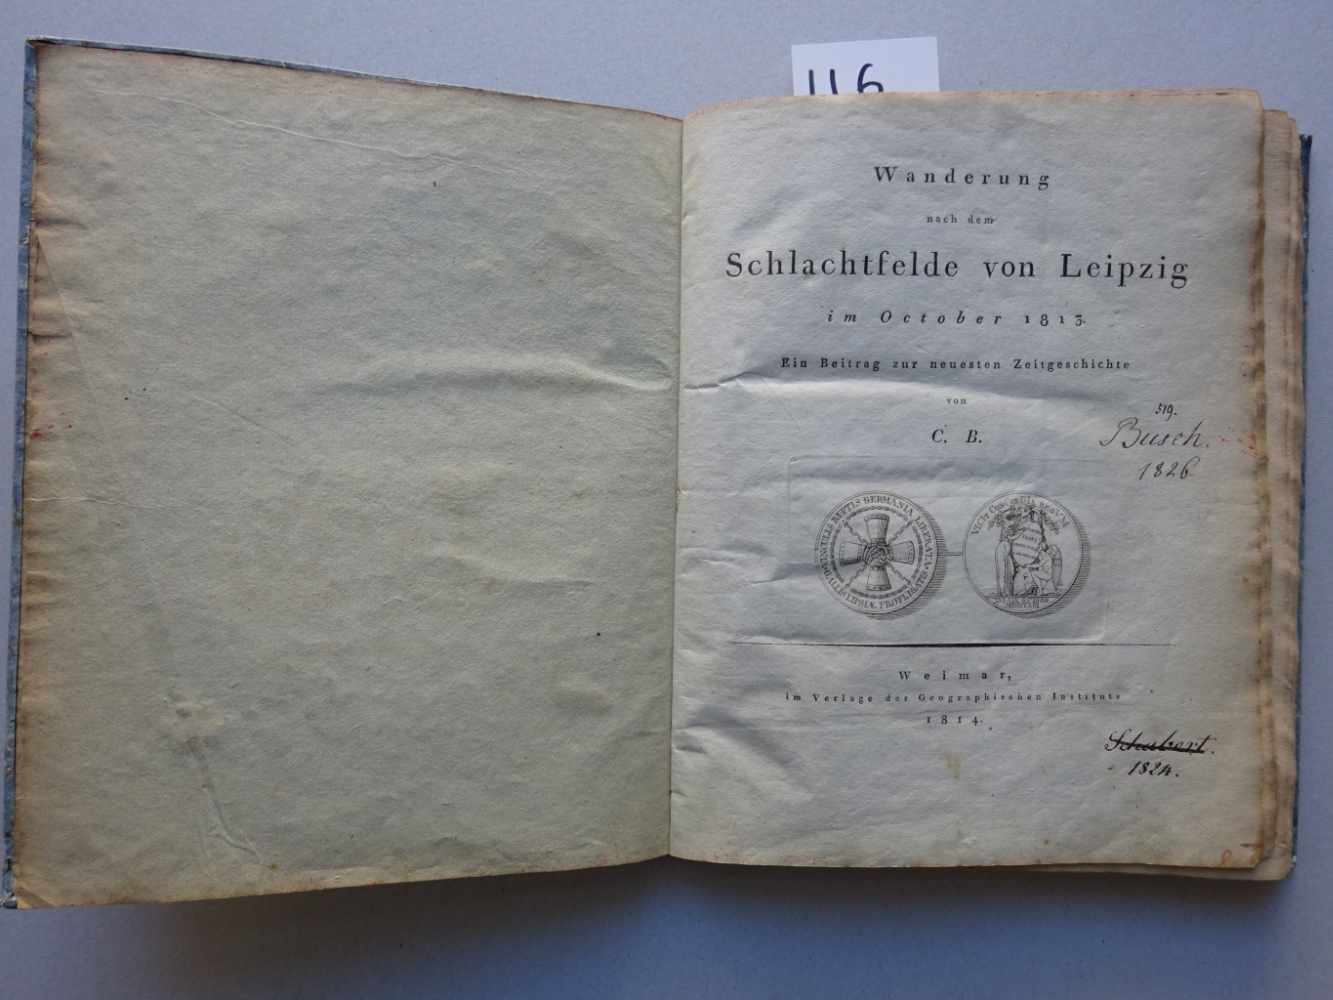 (Bertuch, C.).Wanderung nach dem Schlachtfeld von Leipzig im October 1813. Ein Beitrag zur